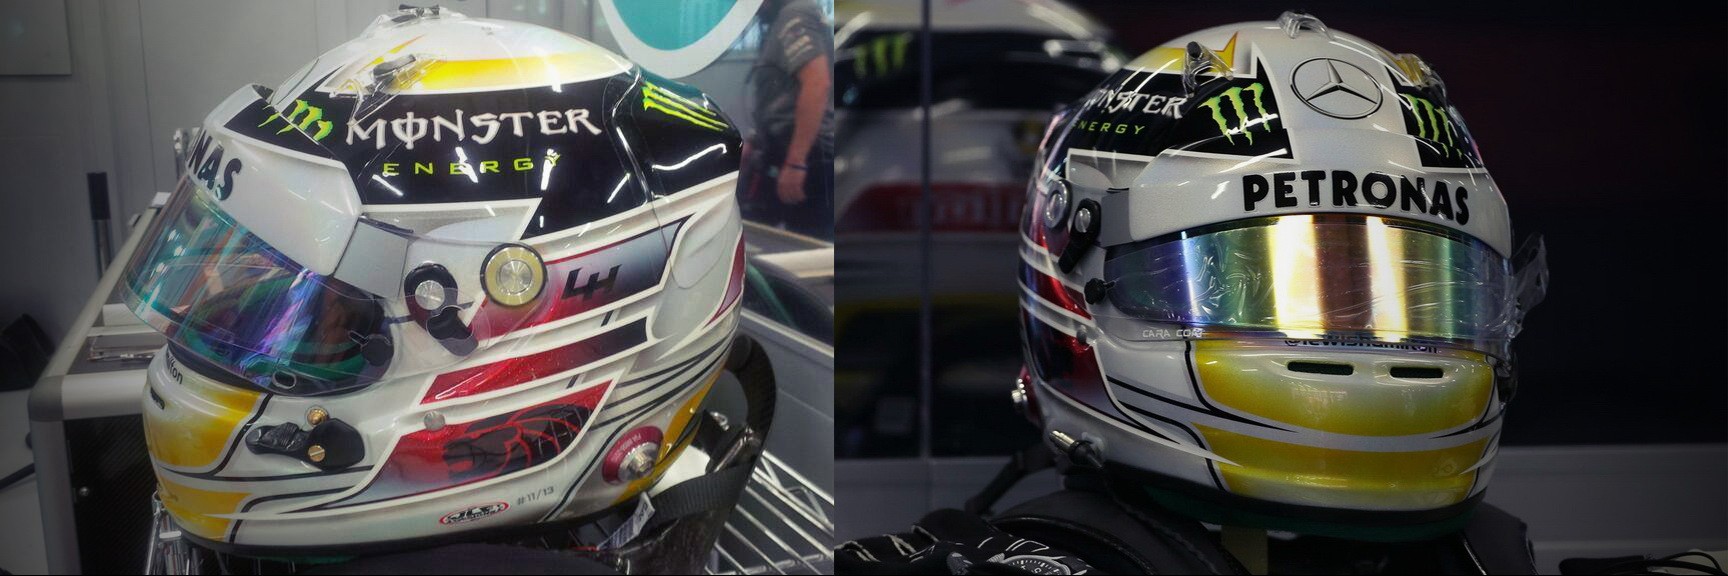 Шлем Льюиса Хэмилтона на Гран-При Сингапура 2013 | 2013 Singapore Grand Prix helmet of Lewis Hamilton